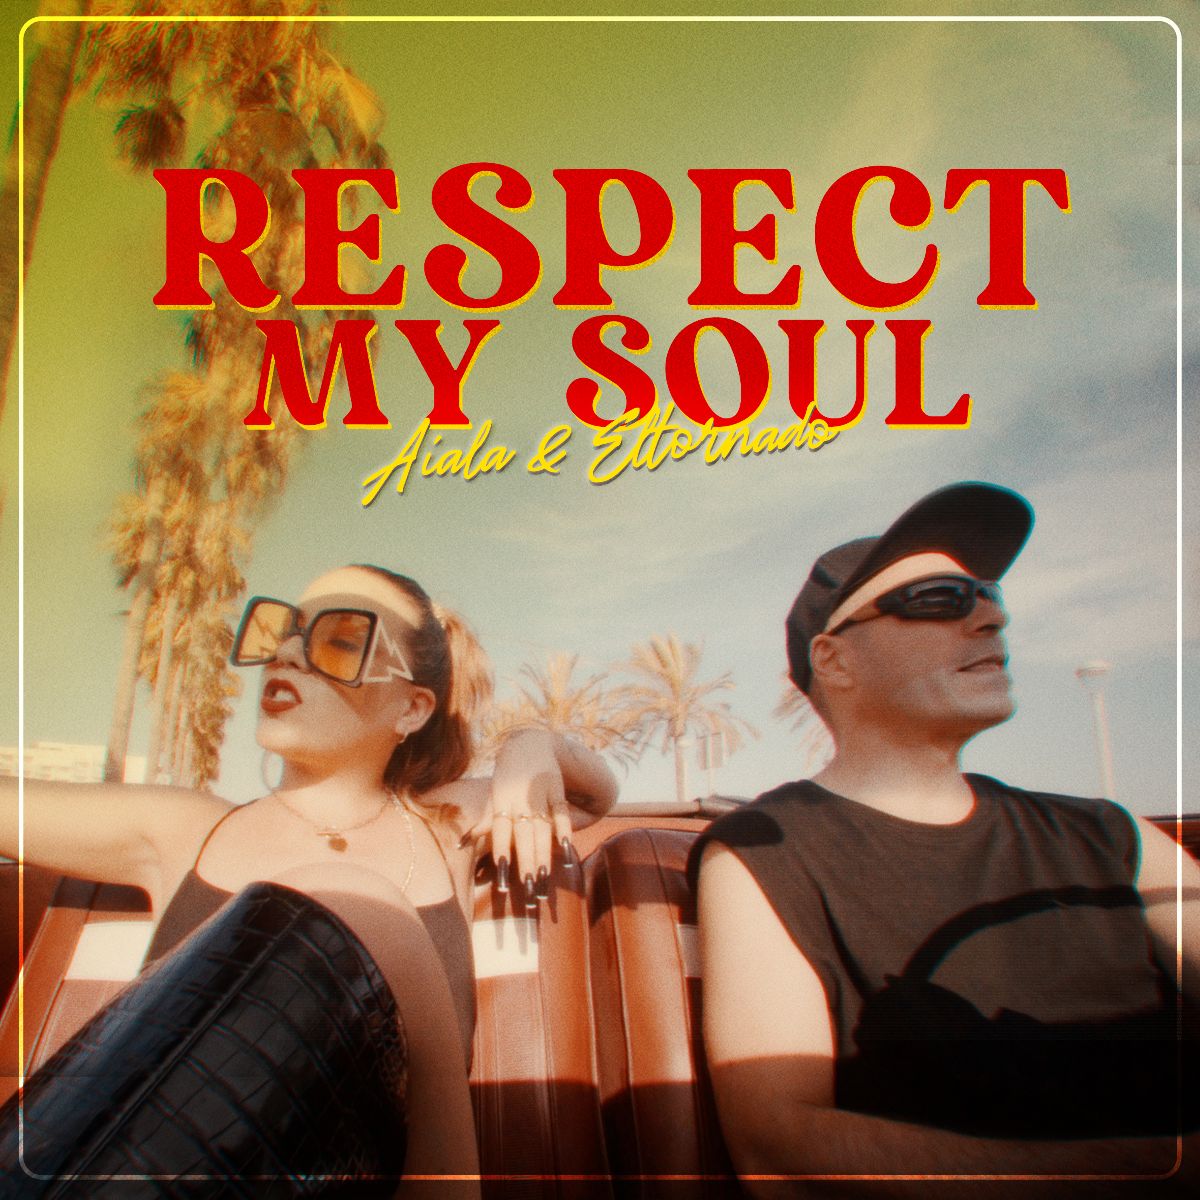 AIALA & ELTORNADO estrenan «Respect my soul»